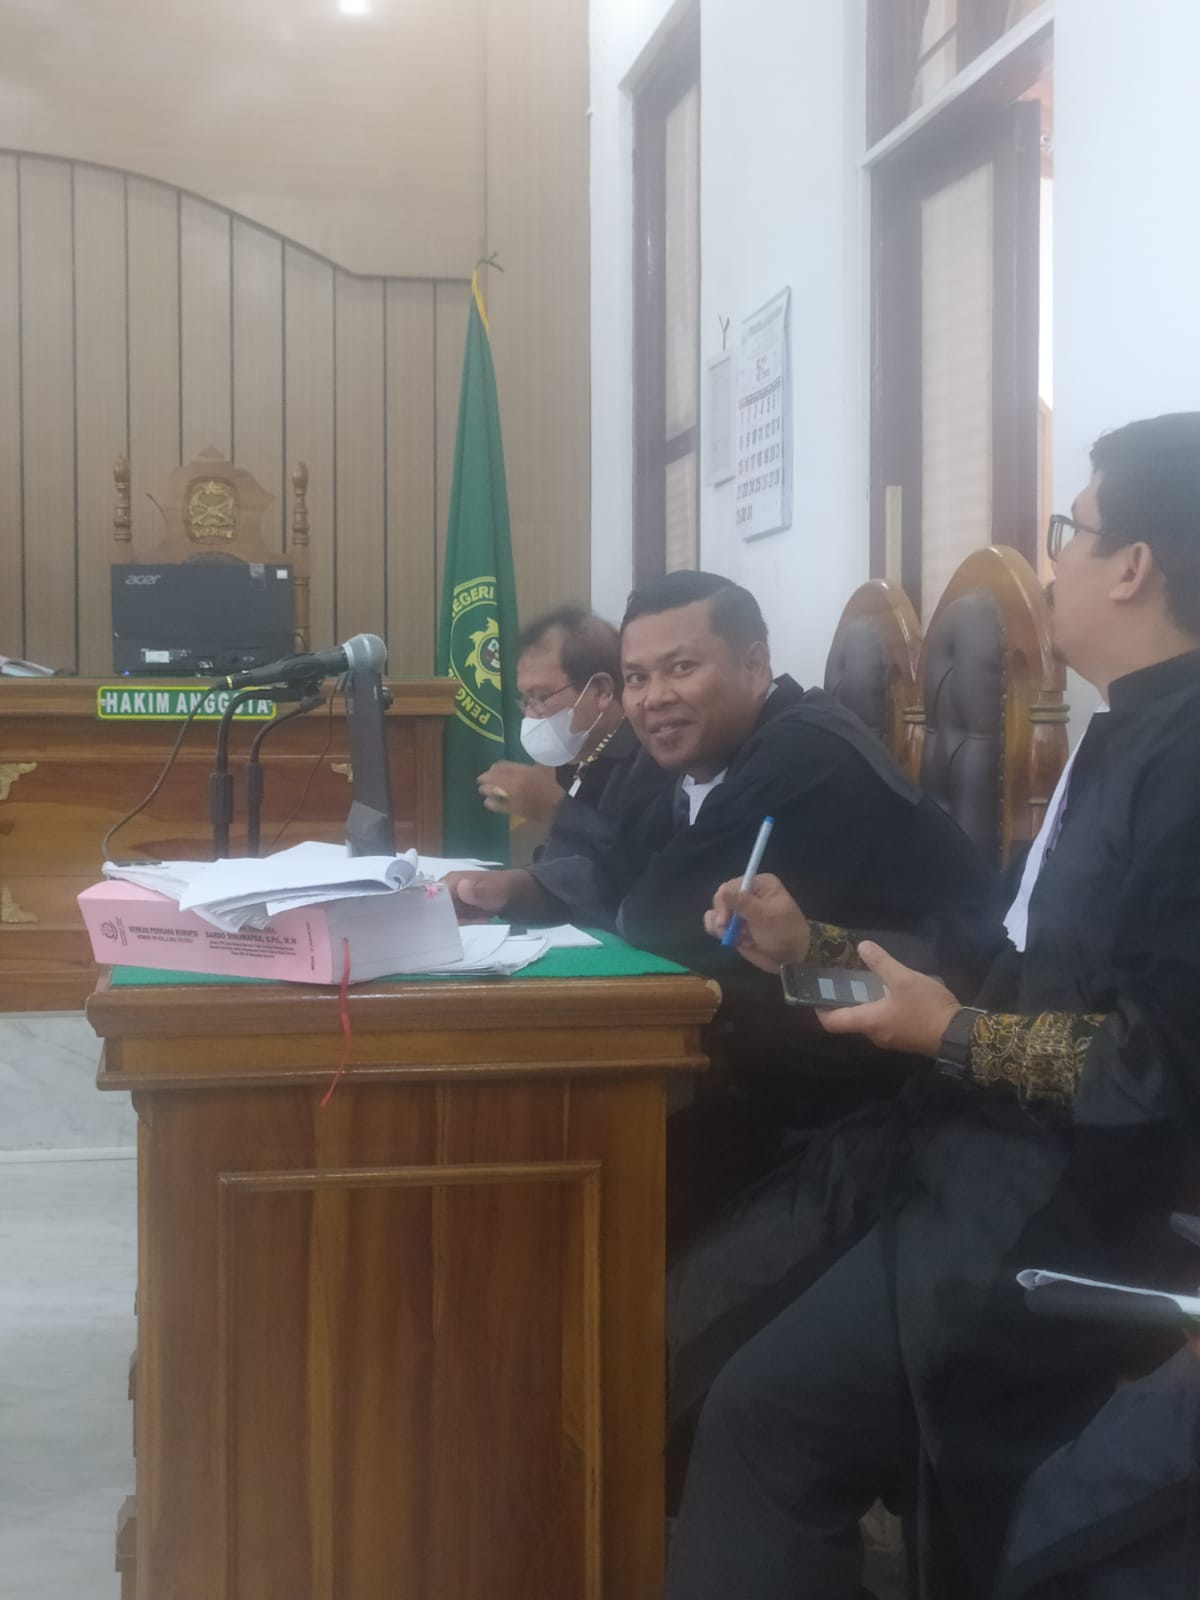 PH Bermohon Kepada Hakim Agar Dihadirkan Mantan Bupati Samosir